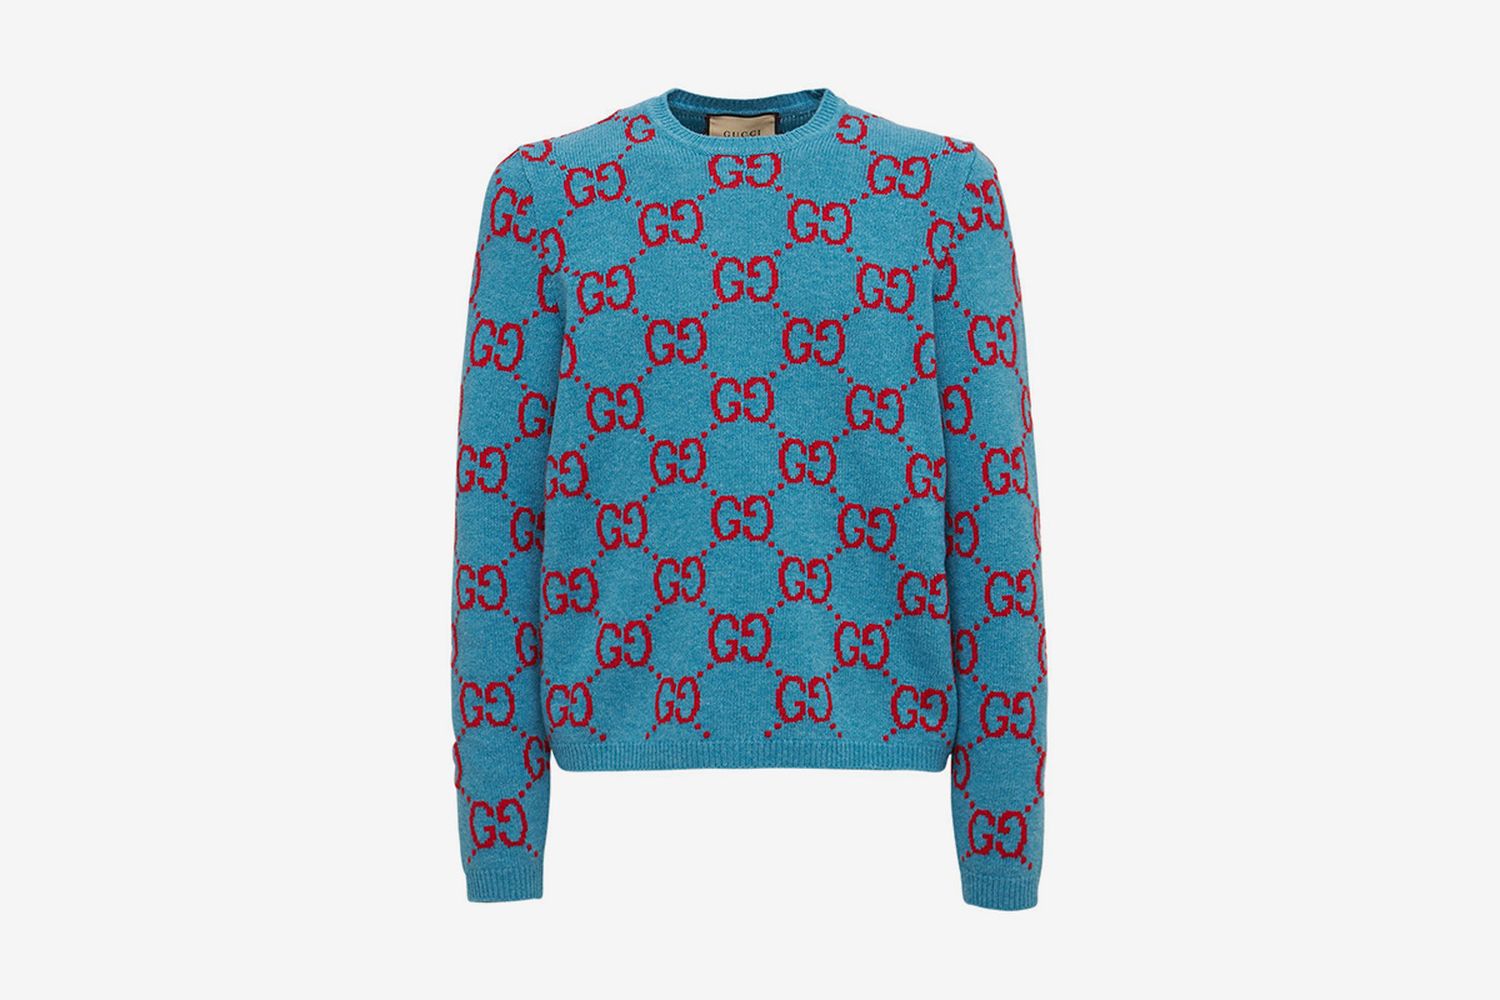 GG Intarsia Sweater